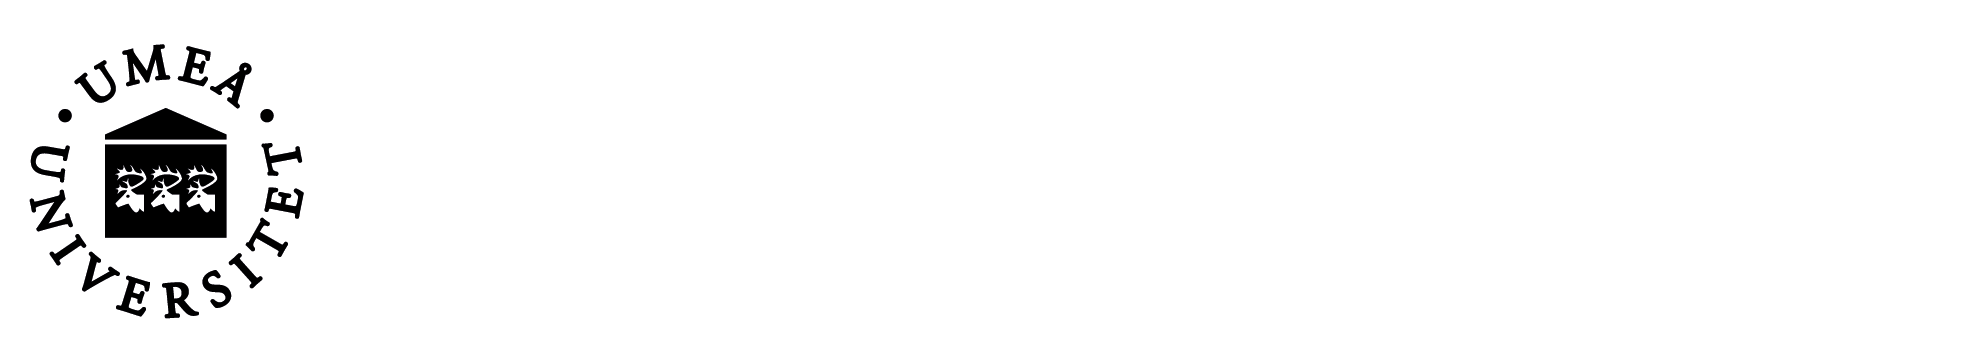 Umeå Universitets logga